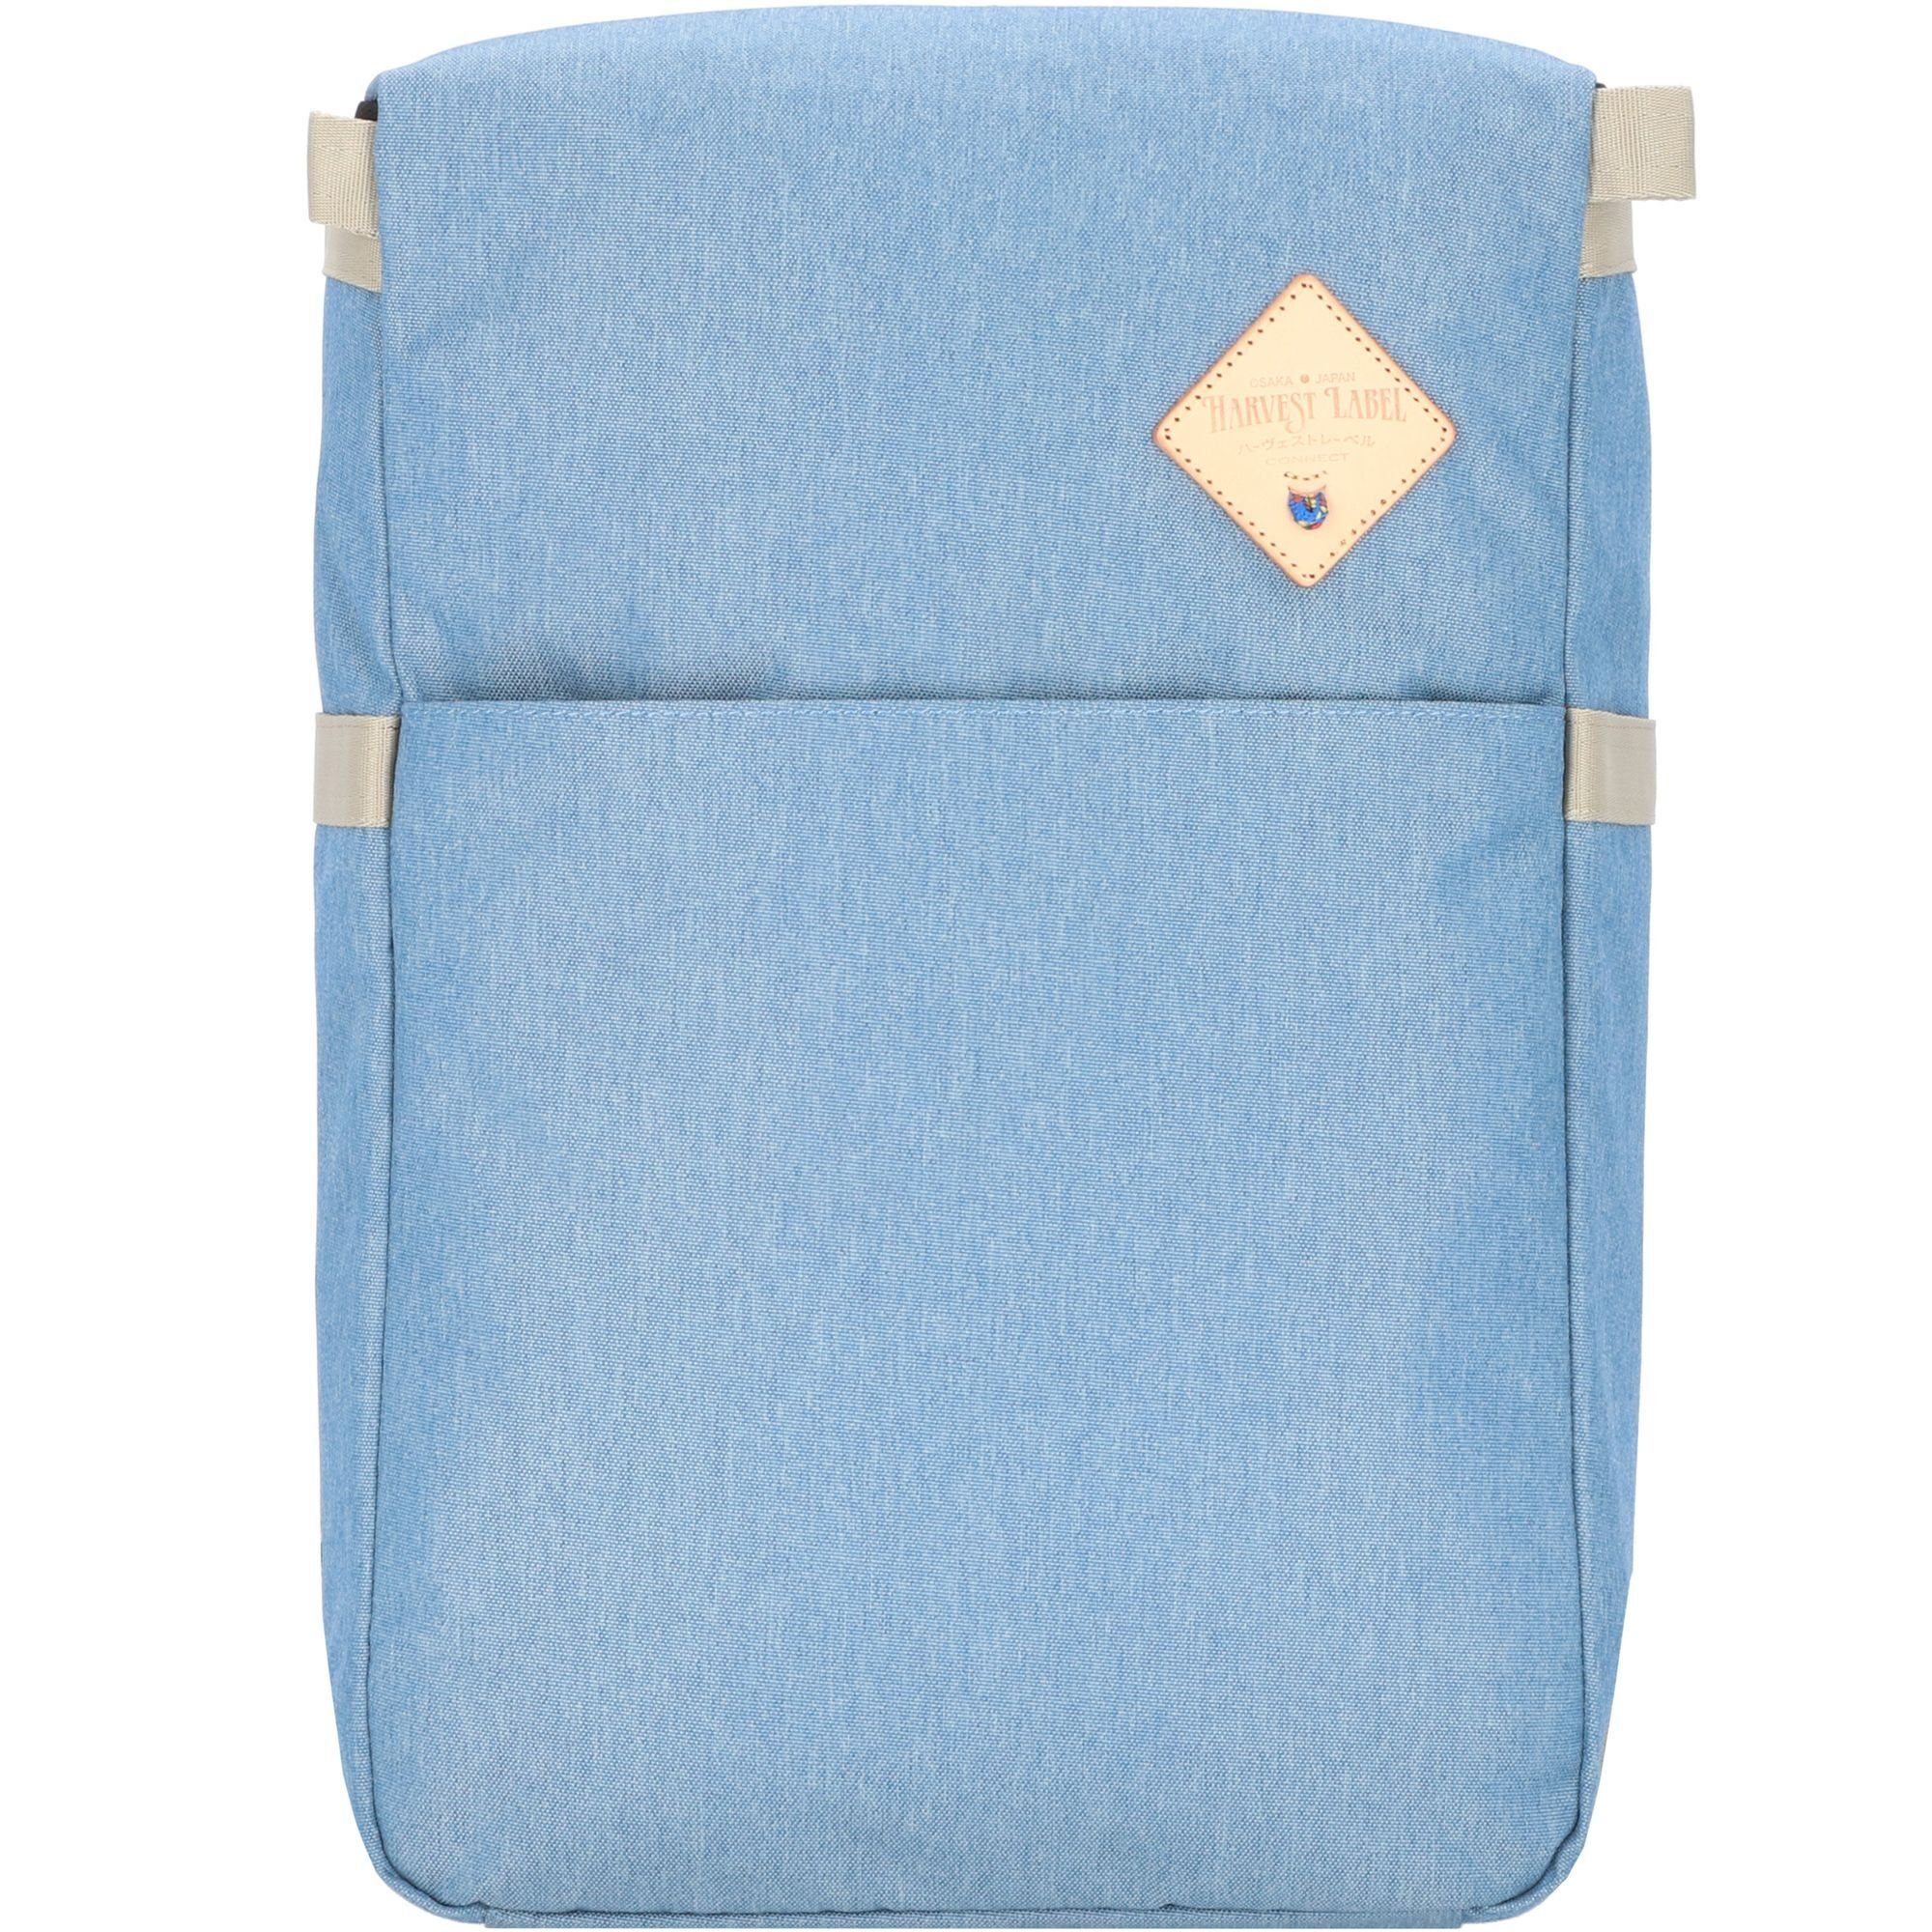 Daypack, blue Polyester Harvest Label